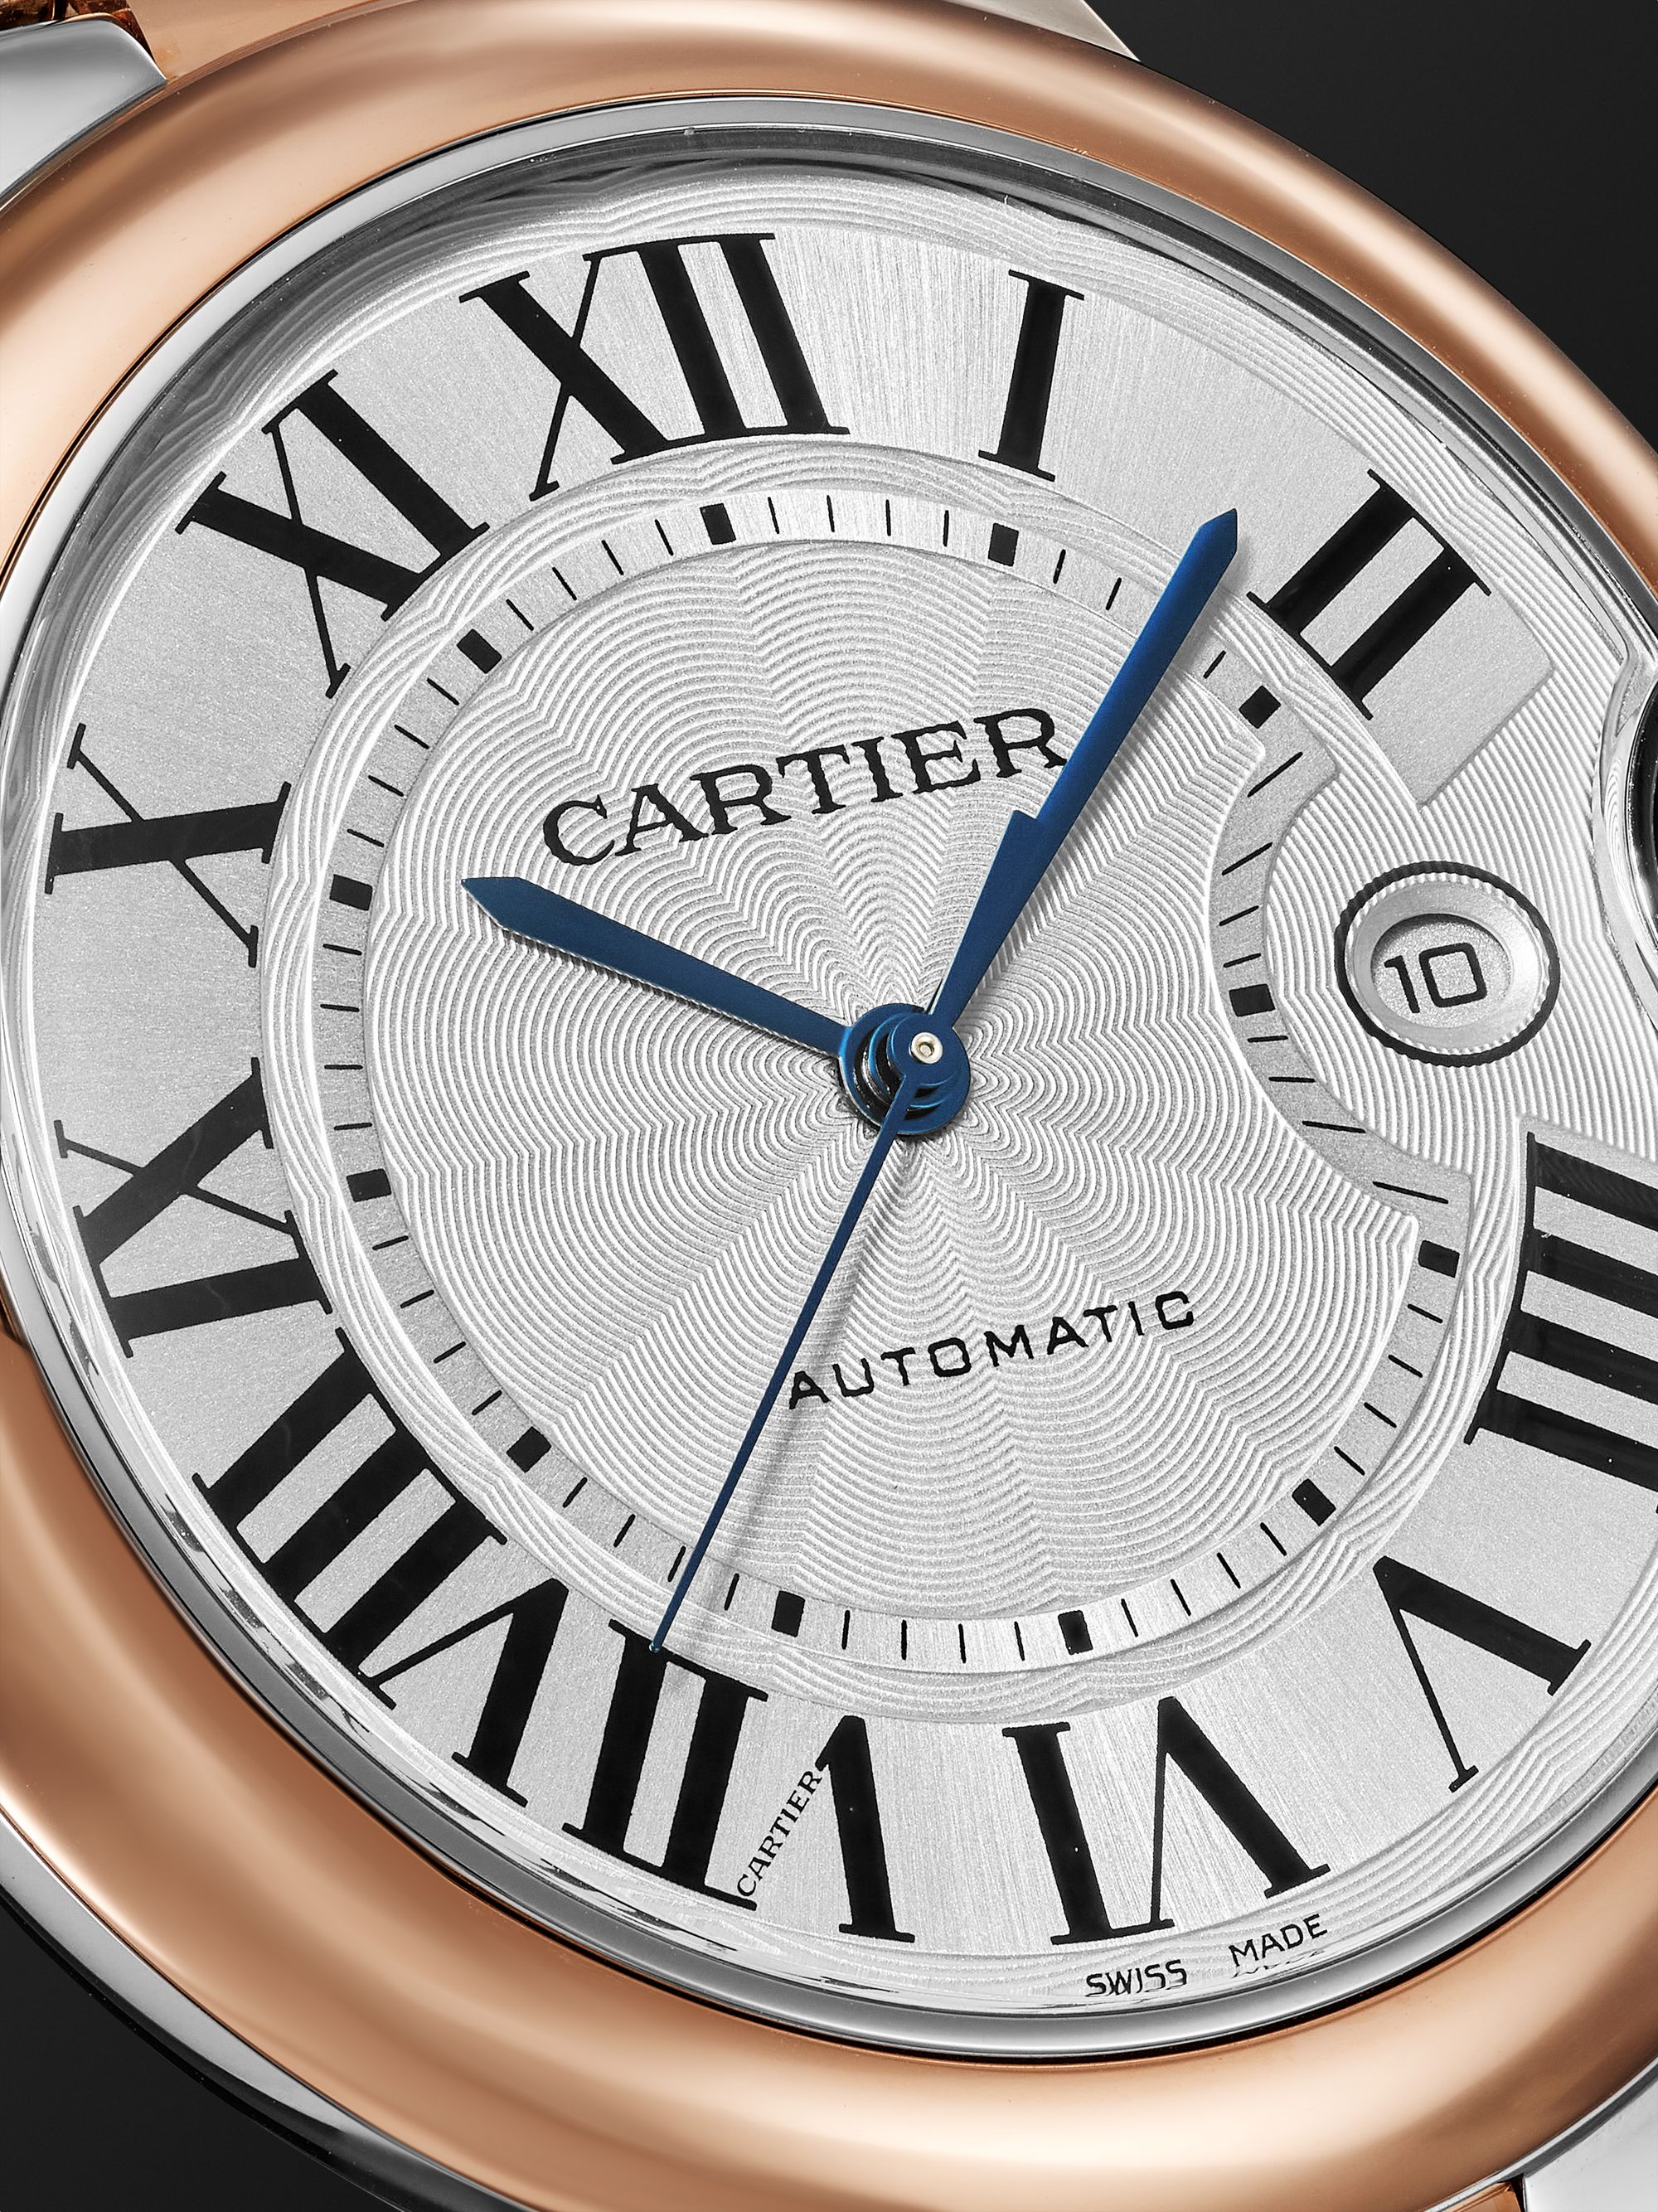 CARTIER Ballon Bleu De Cartier Automatic 42mm 18-Karat Rose Gold and Stainless Steel Watch, Ref. No. W2BB0034